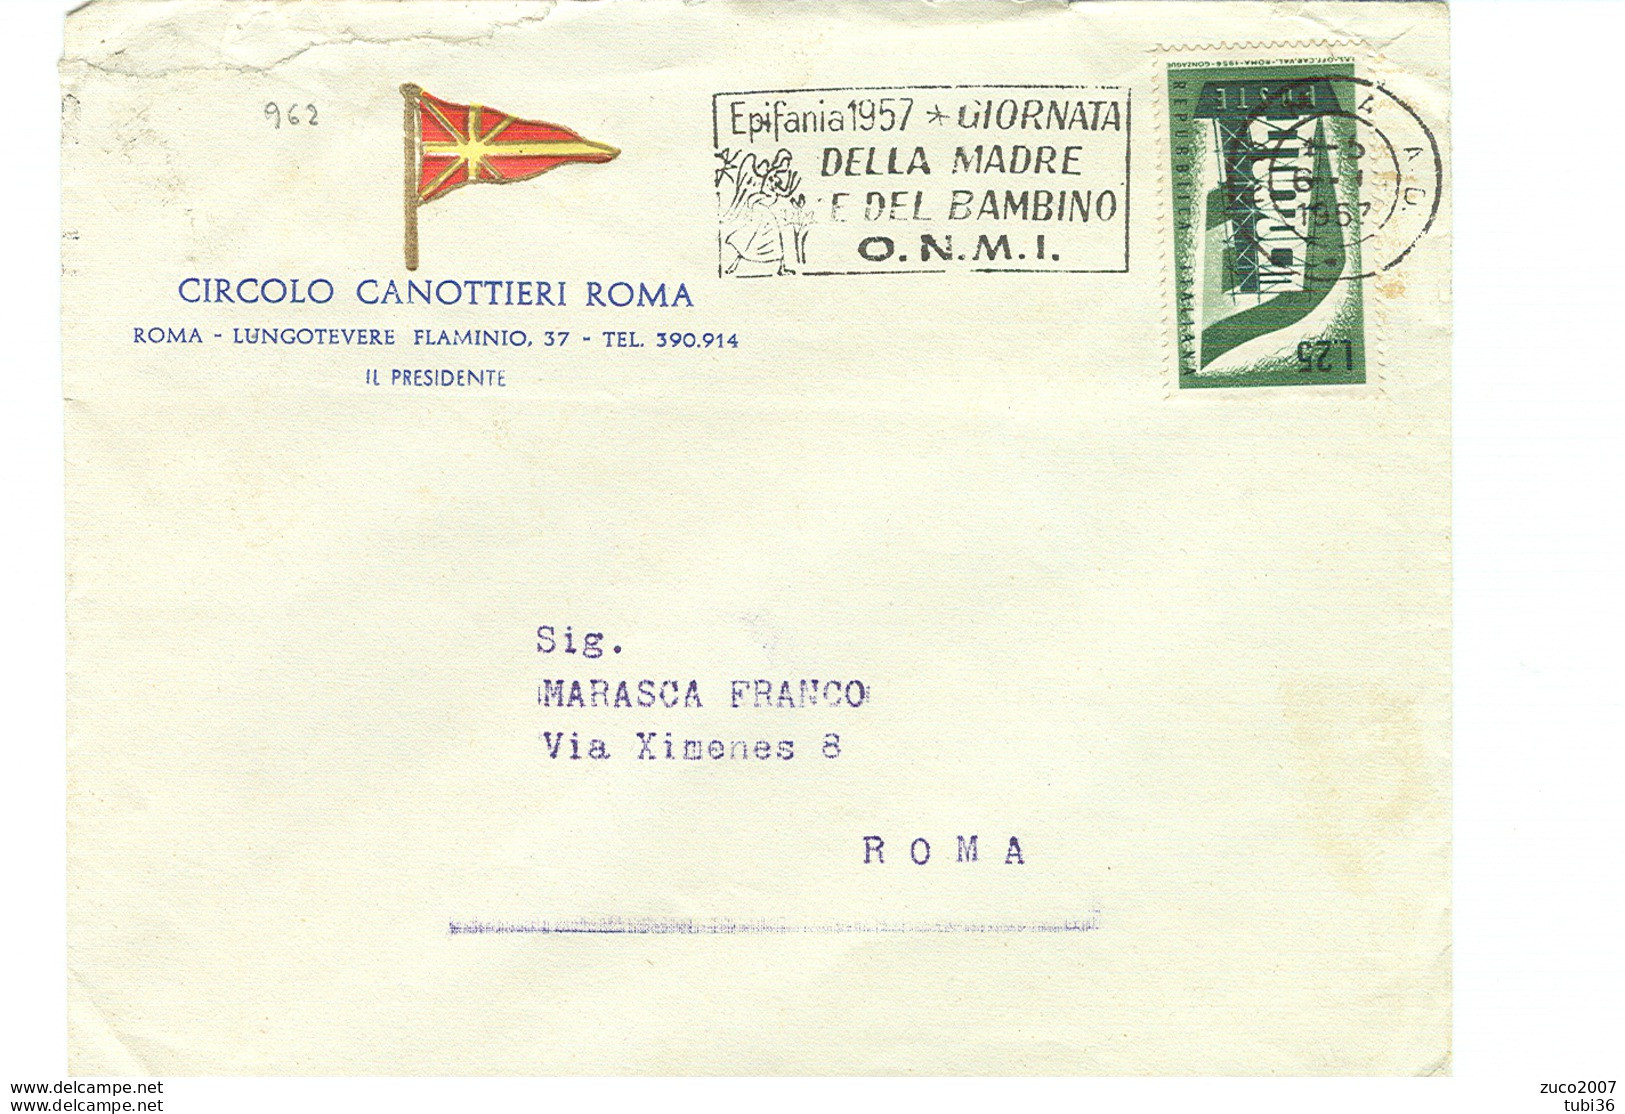 EPIFANIA 1957, GIORNATA DELLA MADRE E DEL BAMBINO- O.N.M.I.- TIMBRO POSTE ROMA TARGHETTA,1957,CIRCOLO CANOTTIERI,ROMA, - Mother's Day